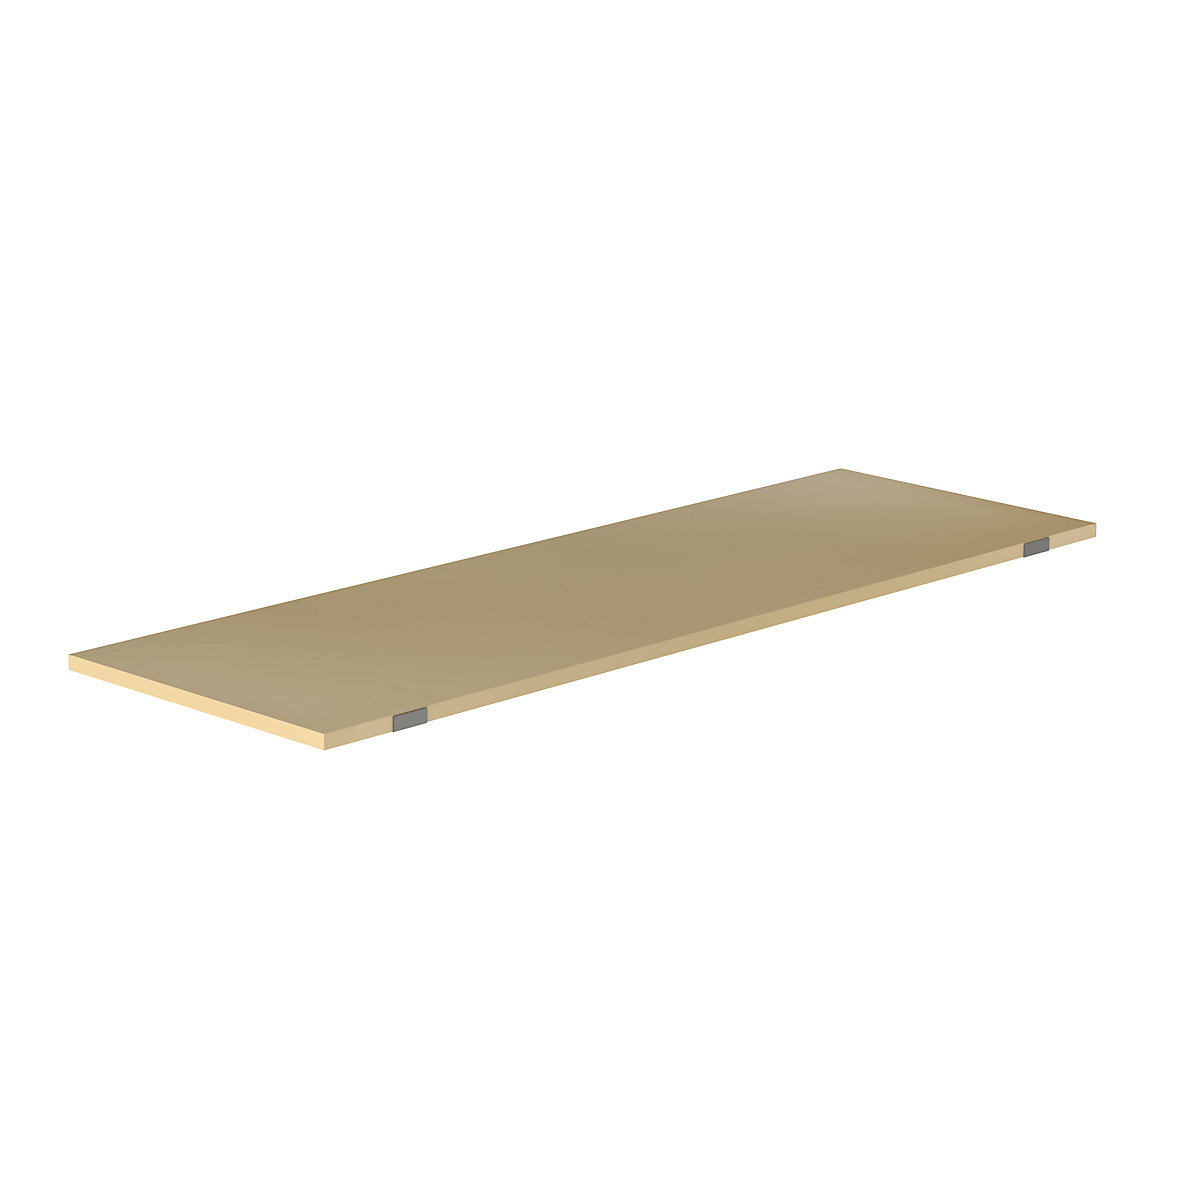 EUROKRAFTpro – Shelf for pallet shelf unit, moulded chipboard, for beam length 2700 mm, shelf unit depth 900 mm